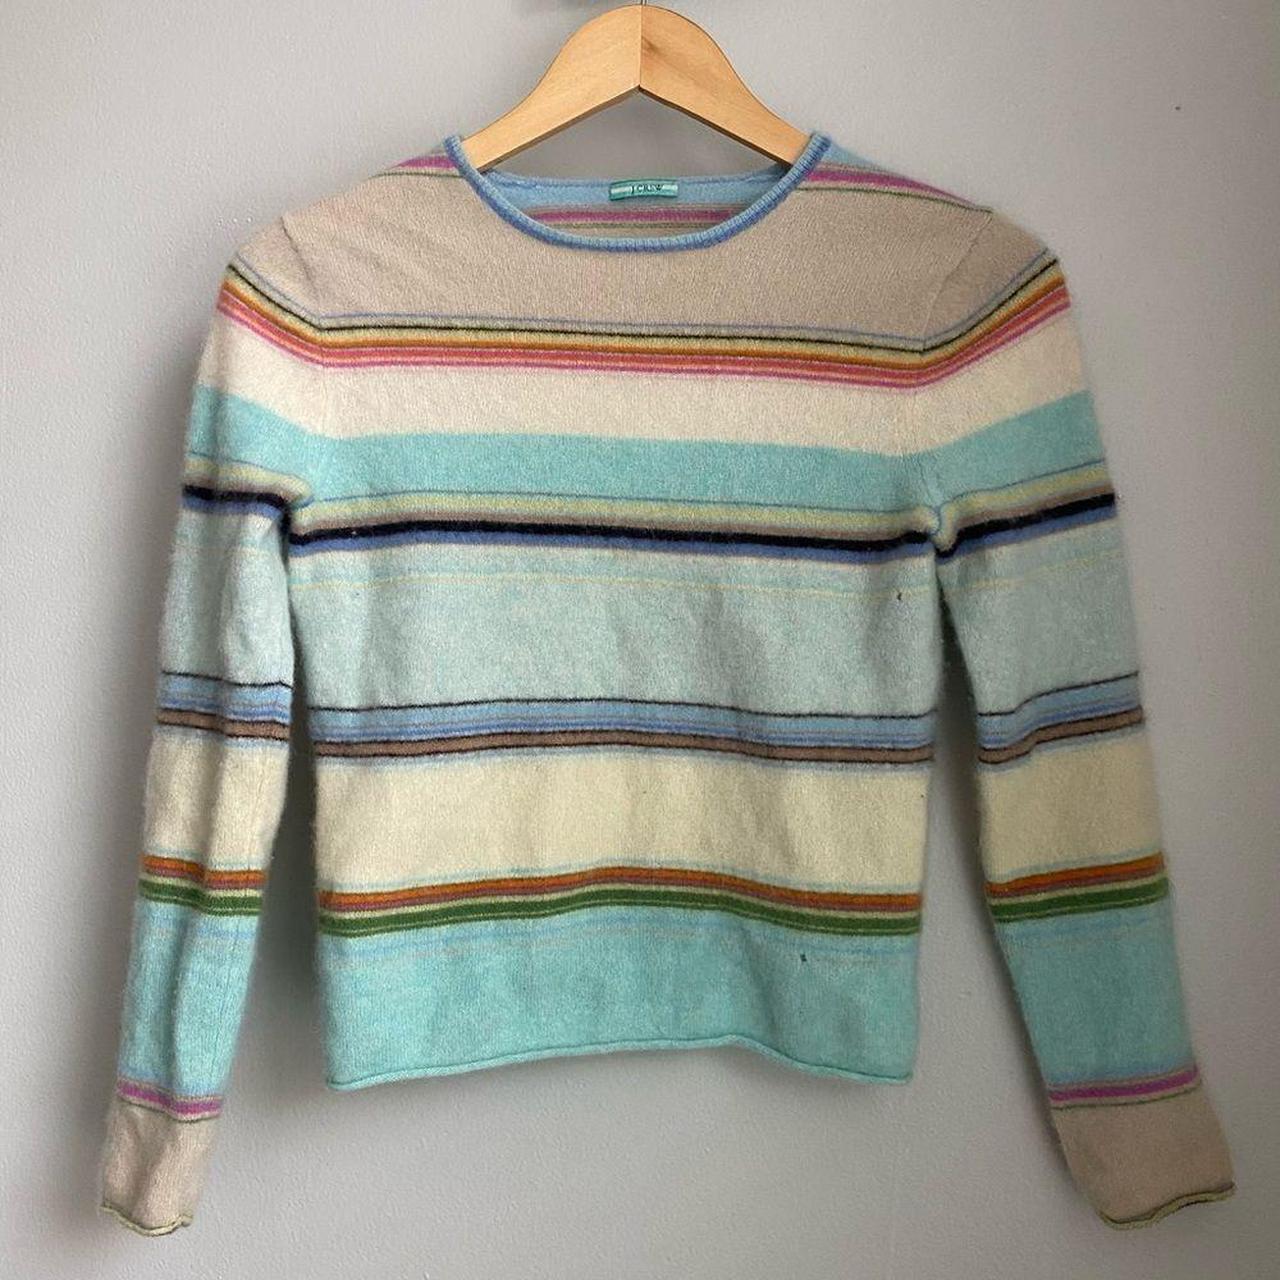 J crew Striped crewneck sweater Size S Has a couple... - Depop